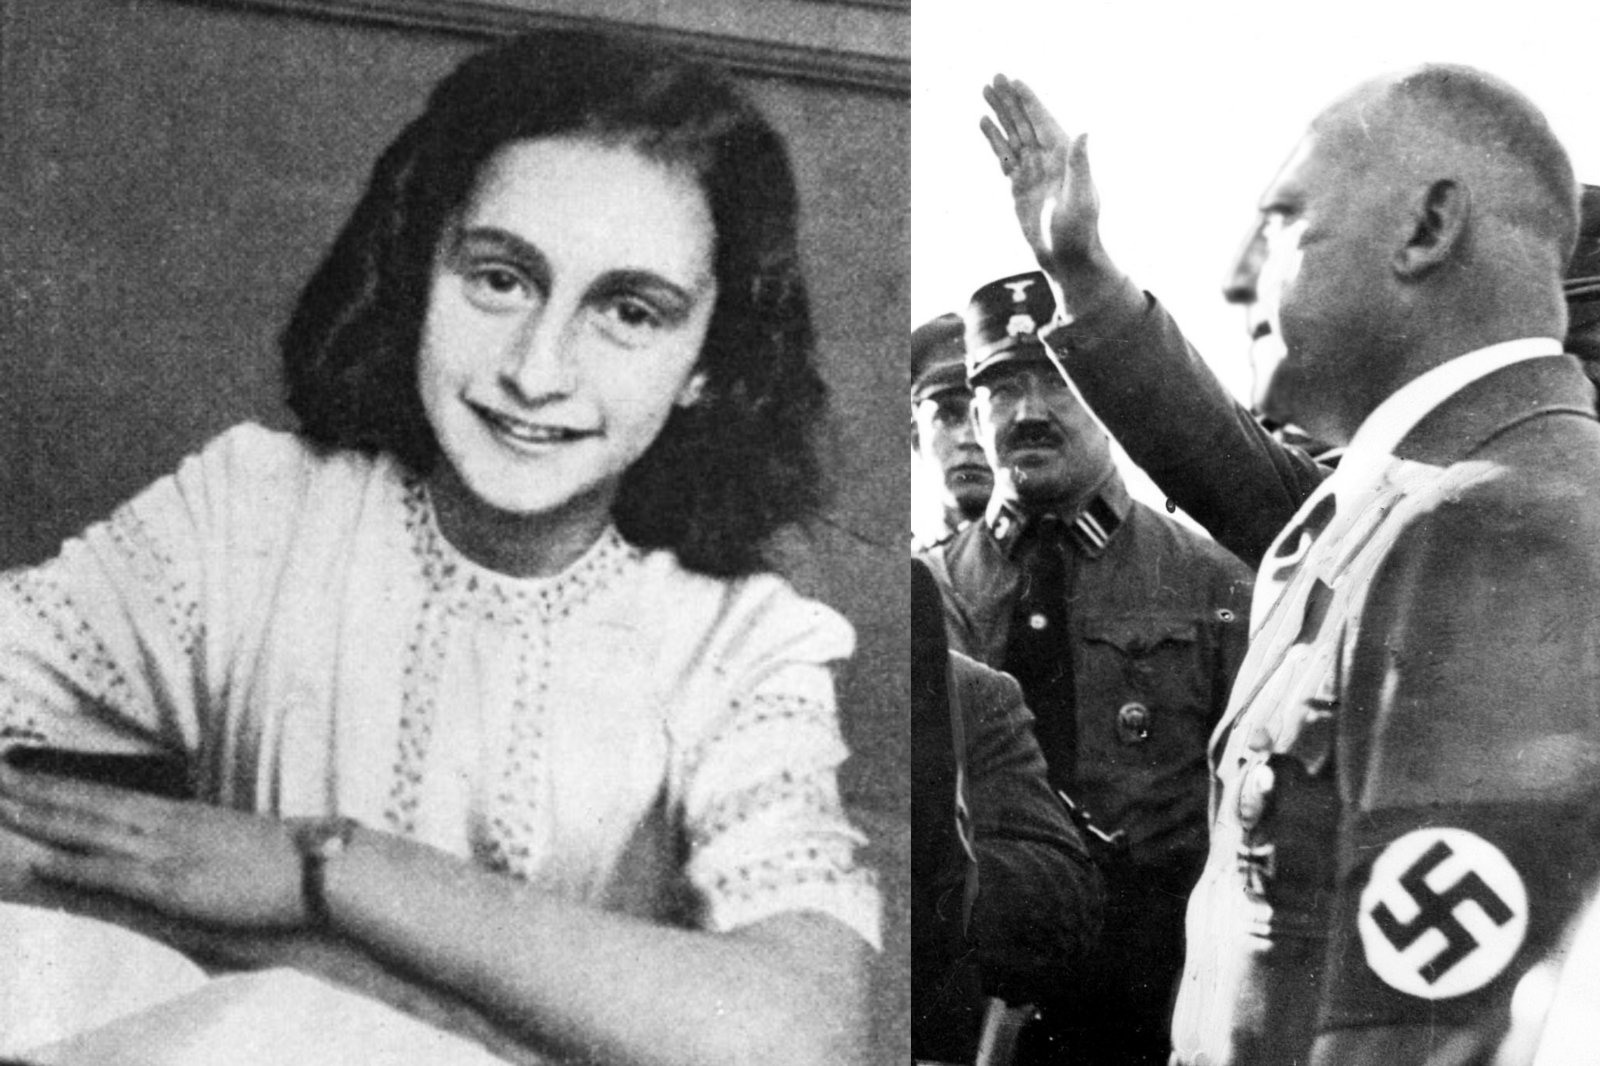 Etterforskningen avdekket at nazistene hadde blitt overlevert til nazistene av en jødisk notarius for å redde familien deres fra Anna Franks skjulested.